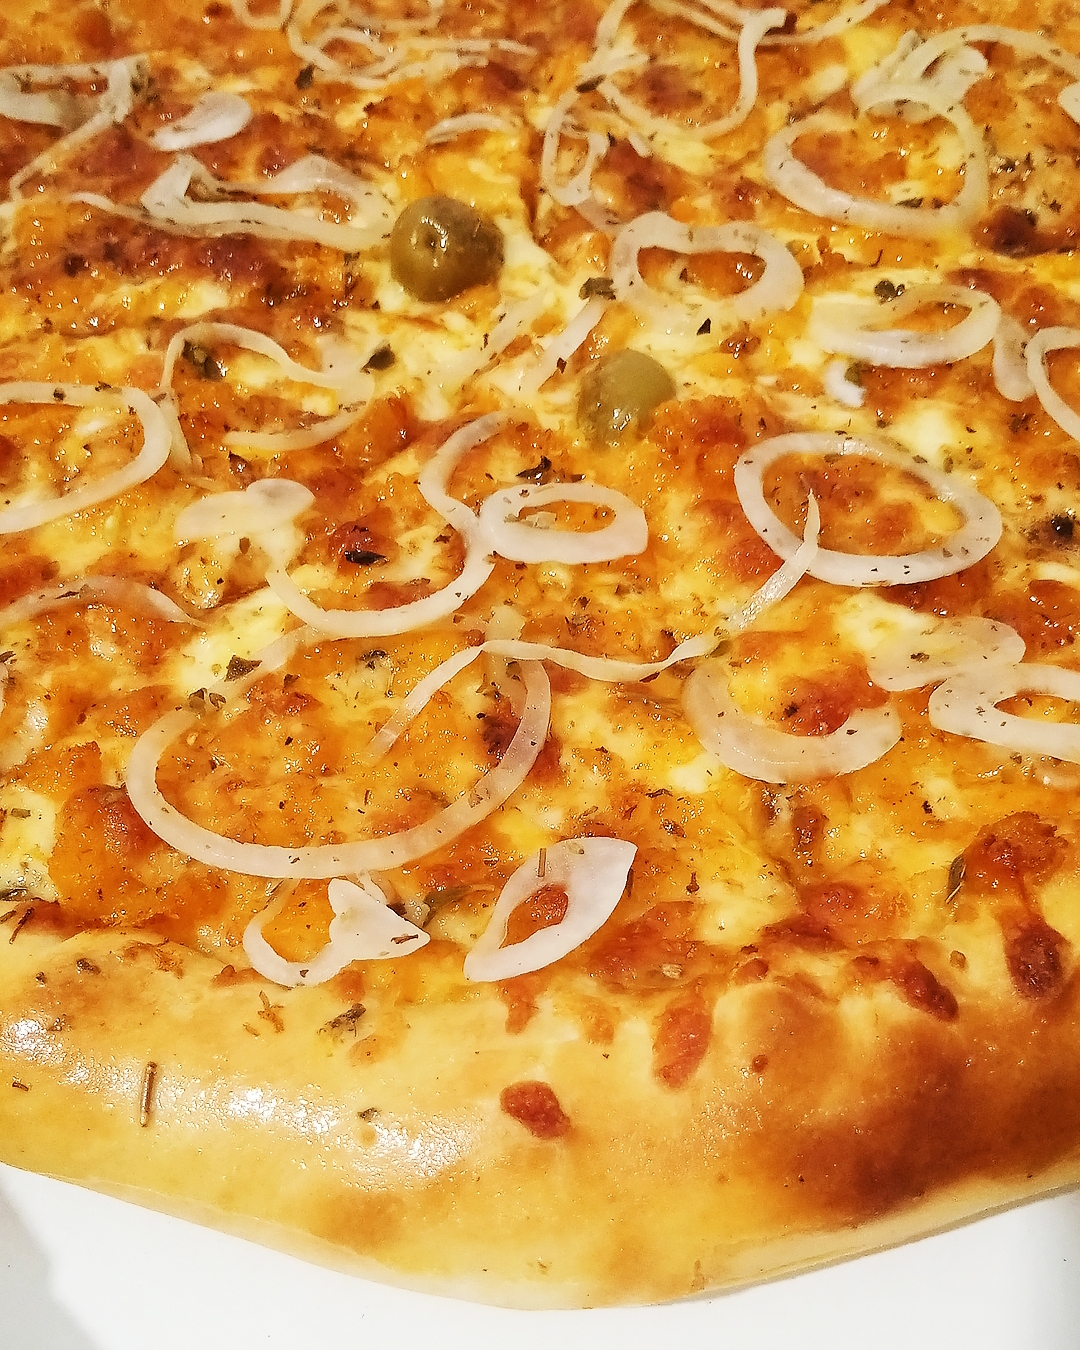 Pensando em #Pizza 🍕 hoje? Então olha essa #camarão do #reidapizzaczs saltando no seu feed, só pra te dar água na boca 🤤